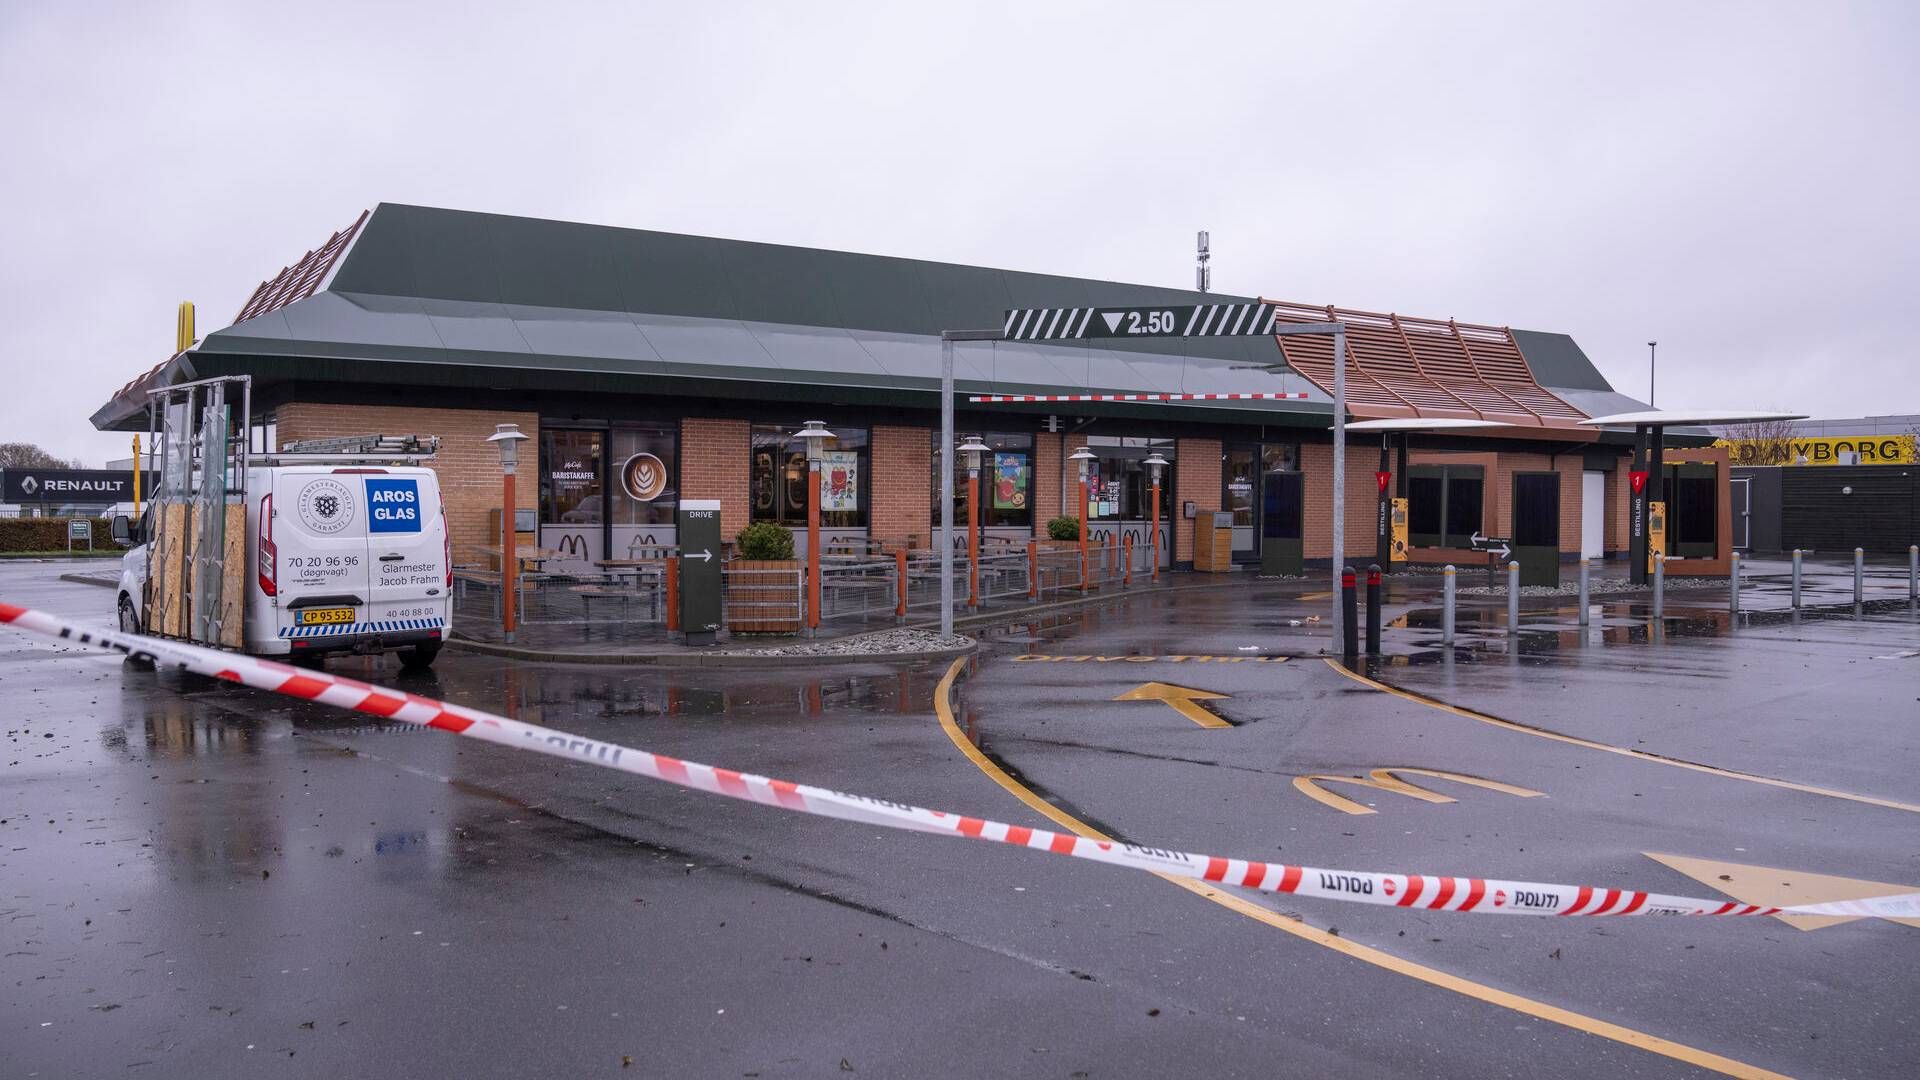 En McDonald's-restaurant i Tilst er ramt af groft hærværk, ifølge politiet, som endnu ikke kan sige, om det er politisk motiveret. | Foto: Bo Amstrup/Ritzau Scanpix